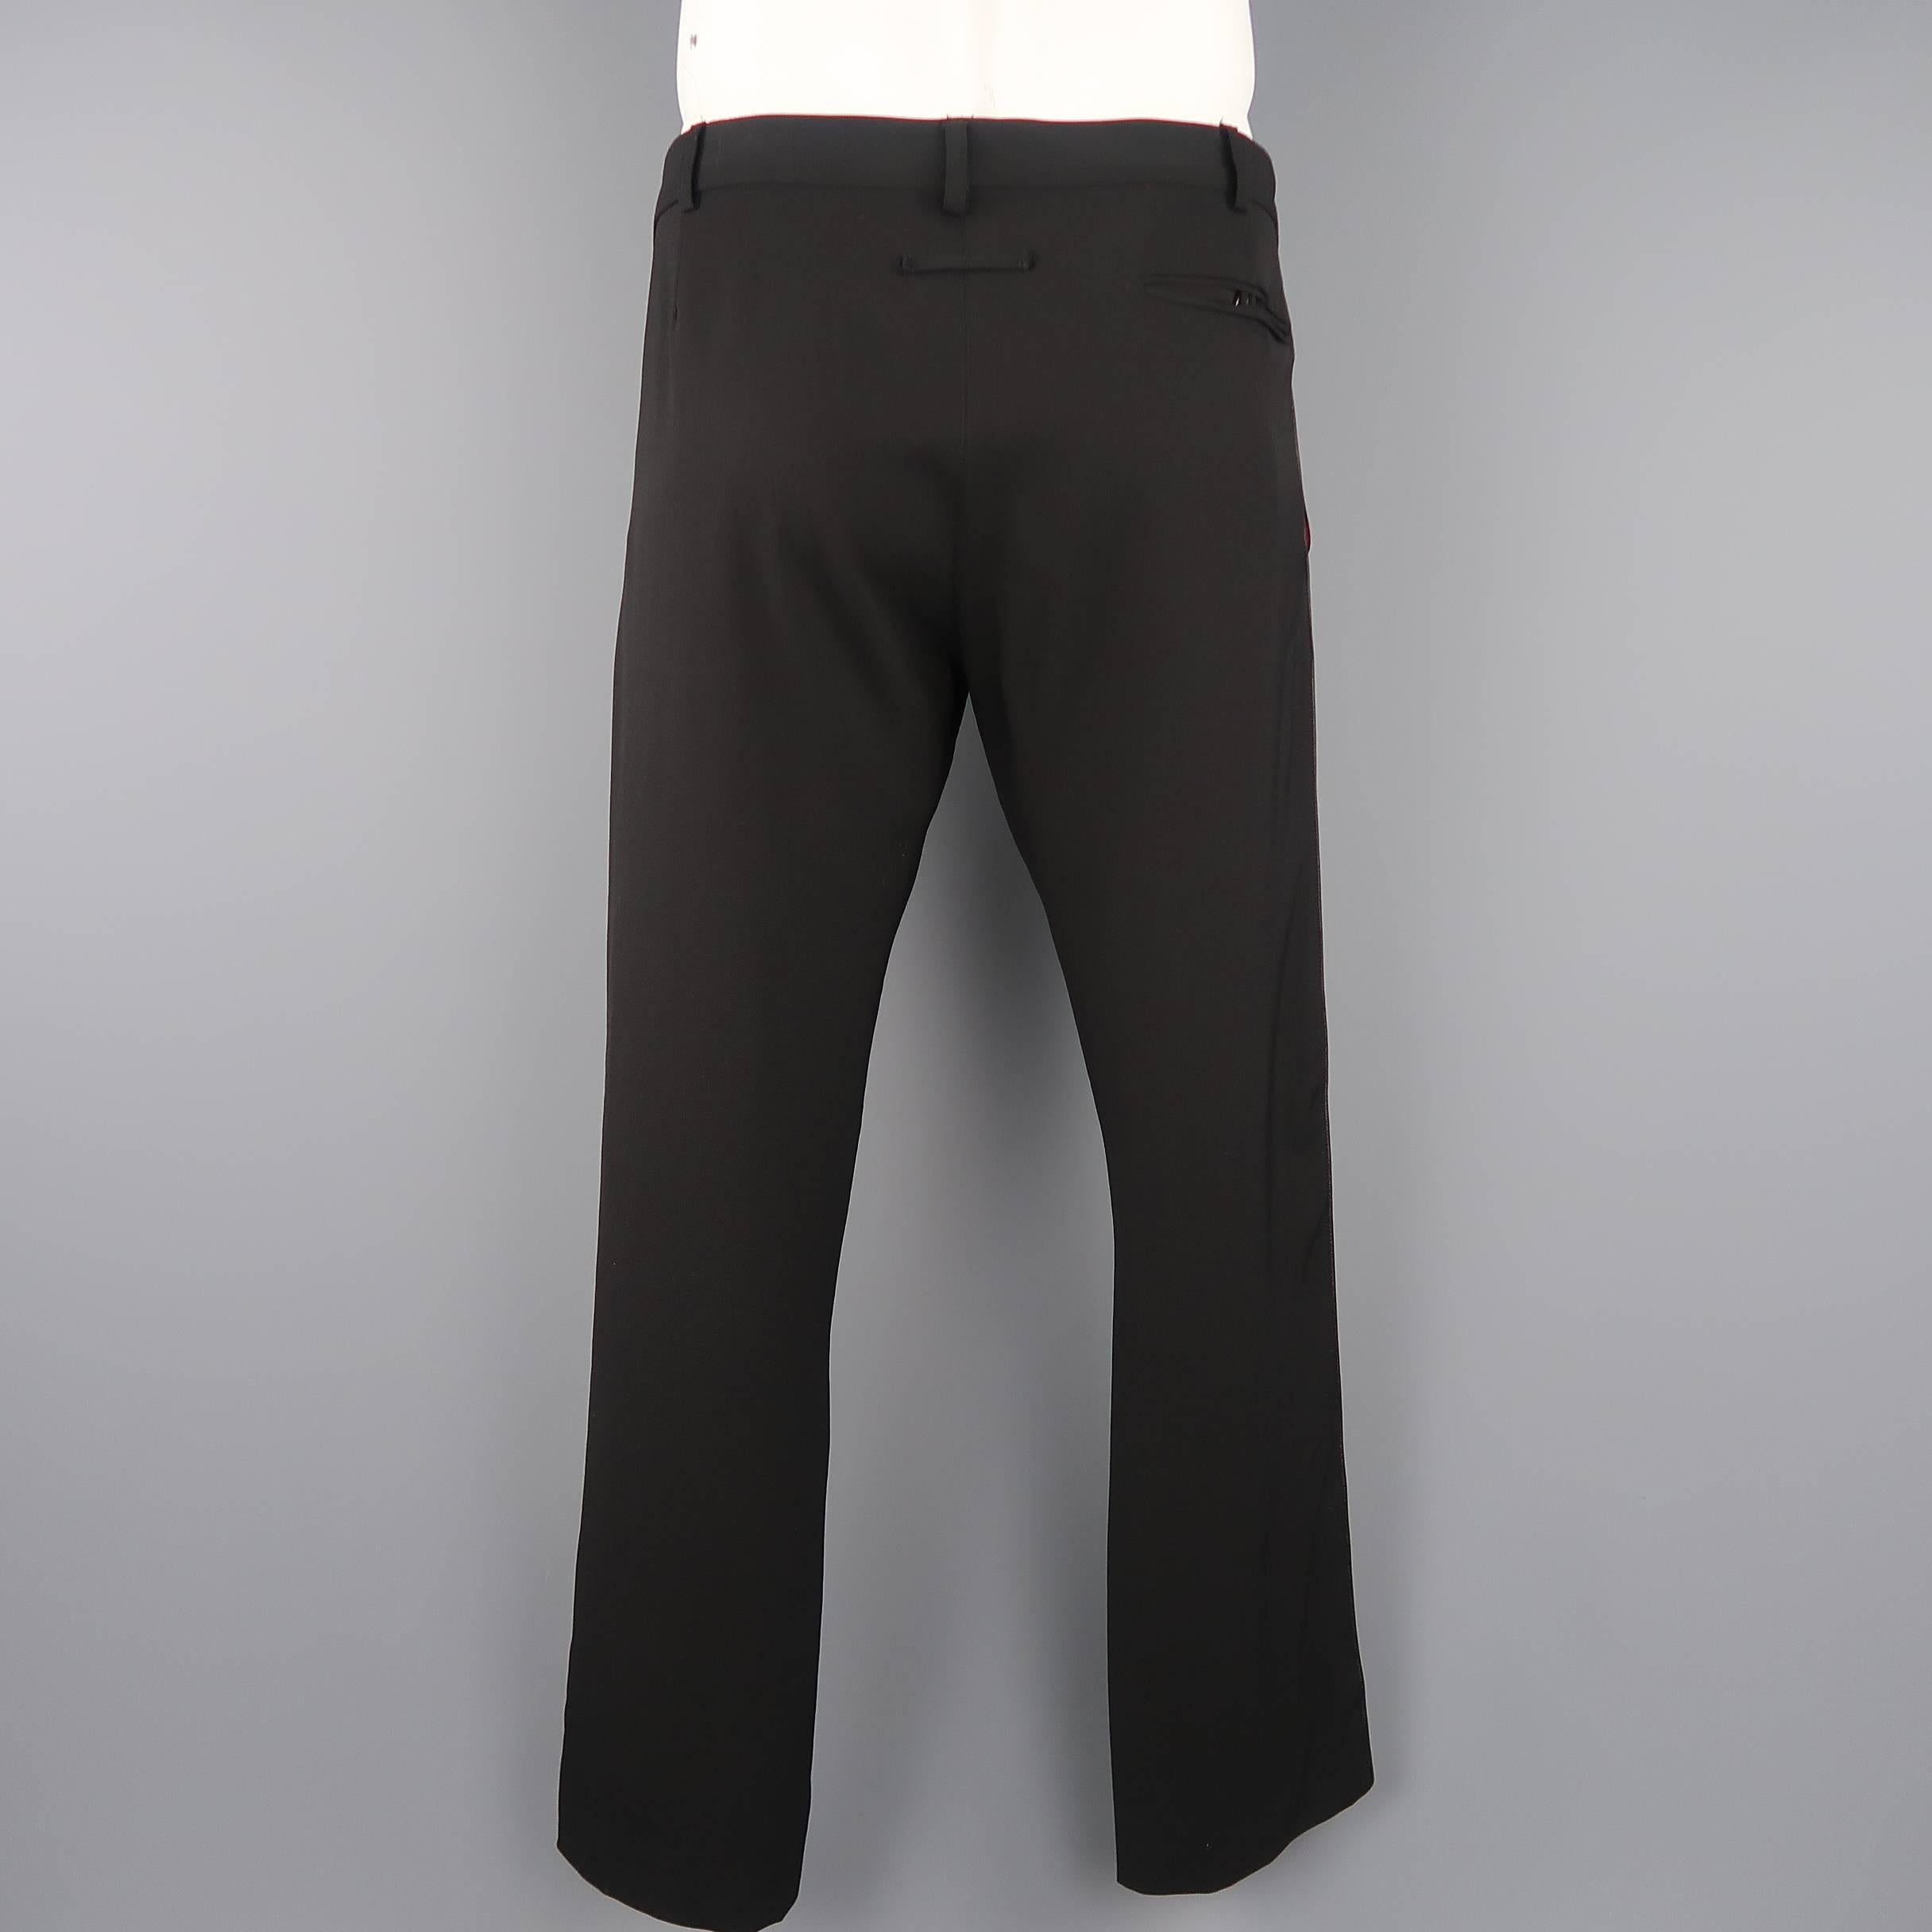 Jean Paul Gaultier Men's Black Wool Leather Piping Dress Pants 2